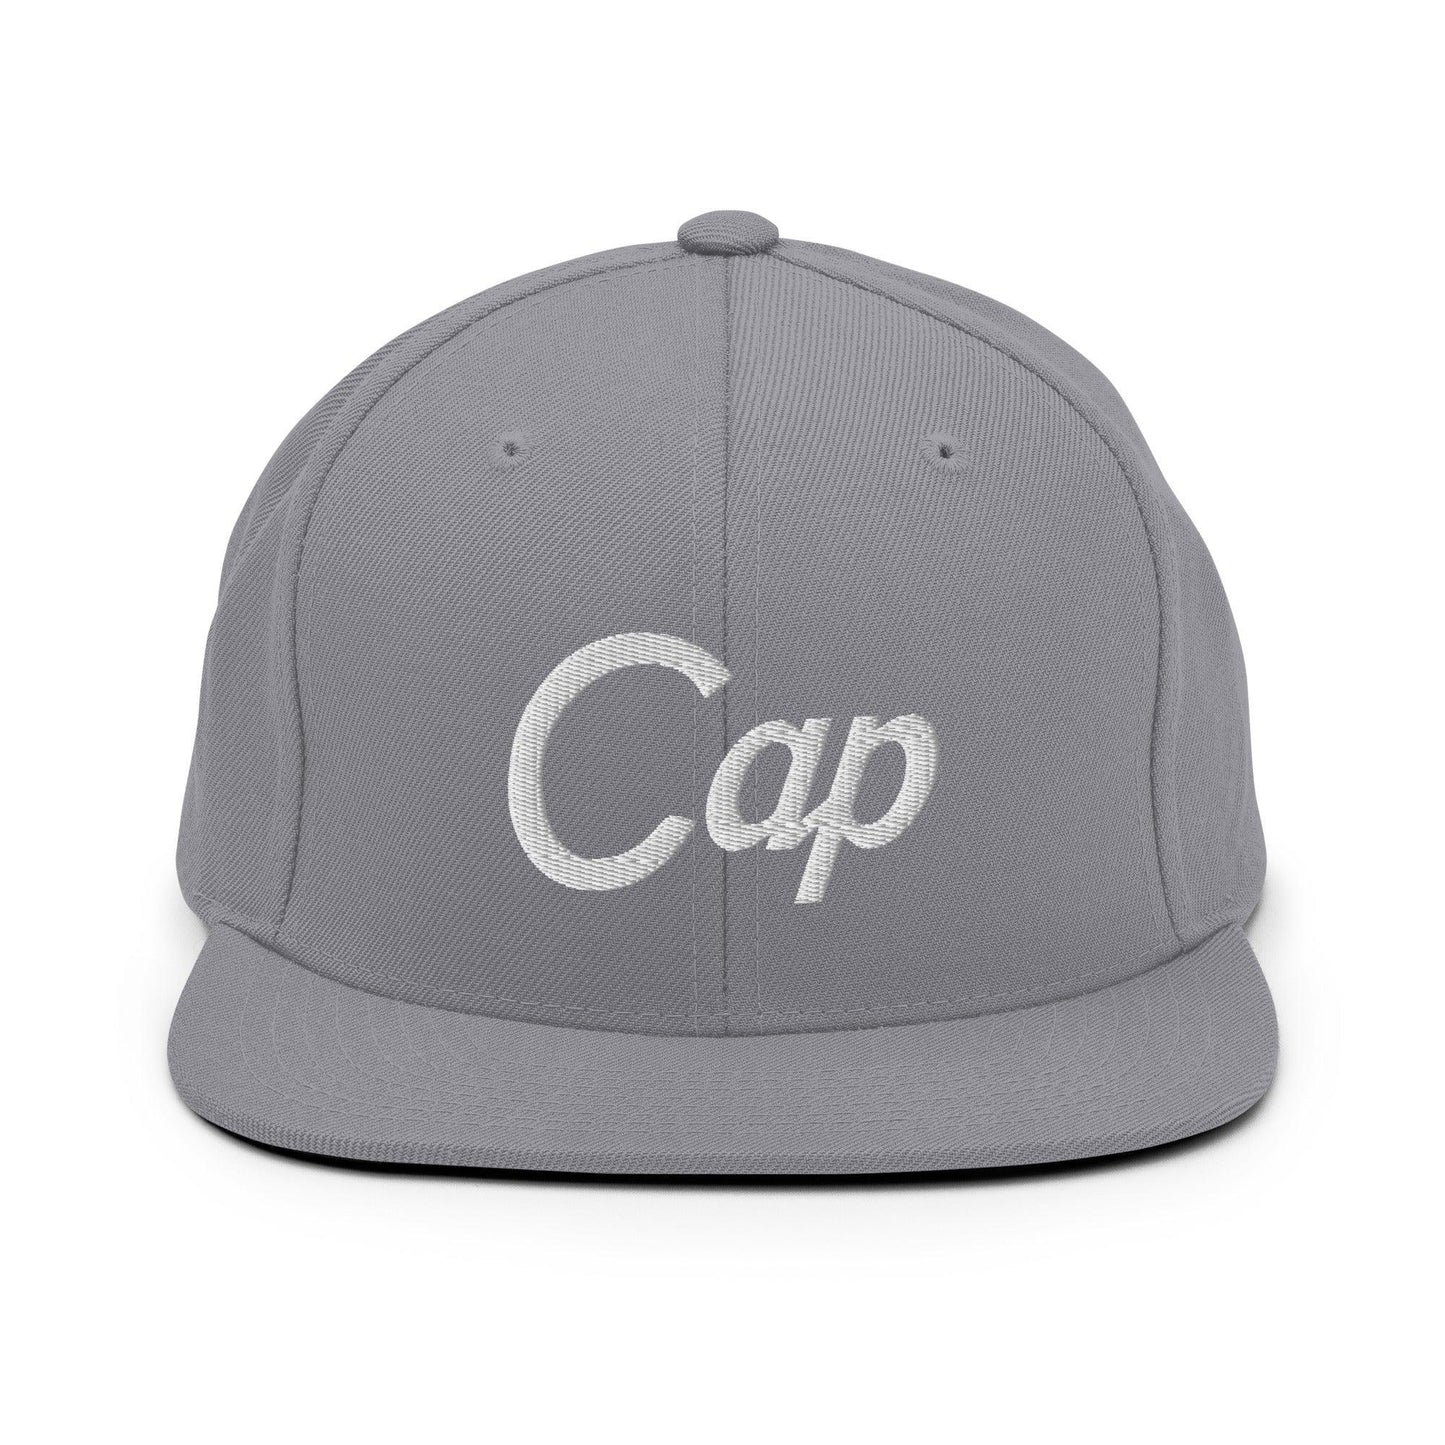 Cap Script Snapback Hat Silver